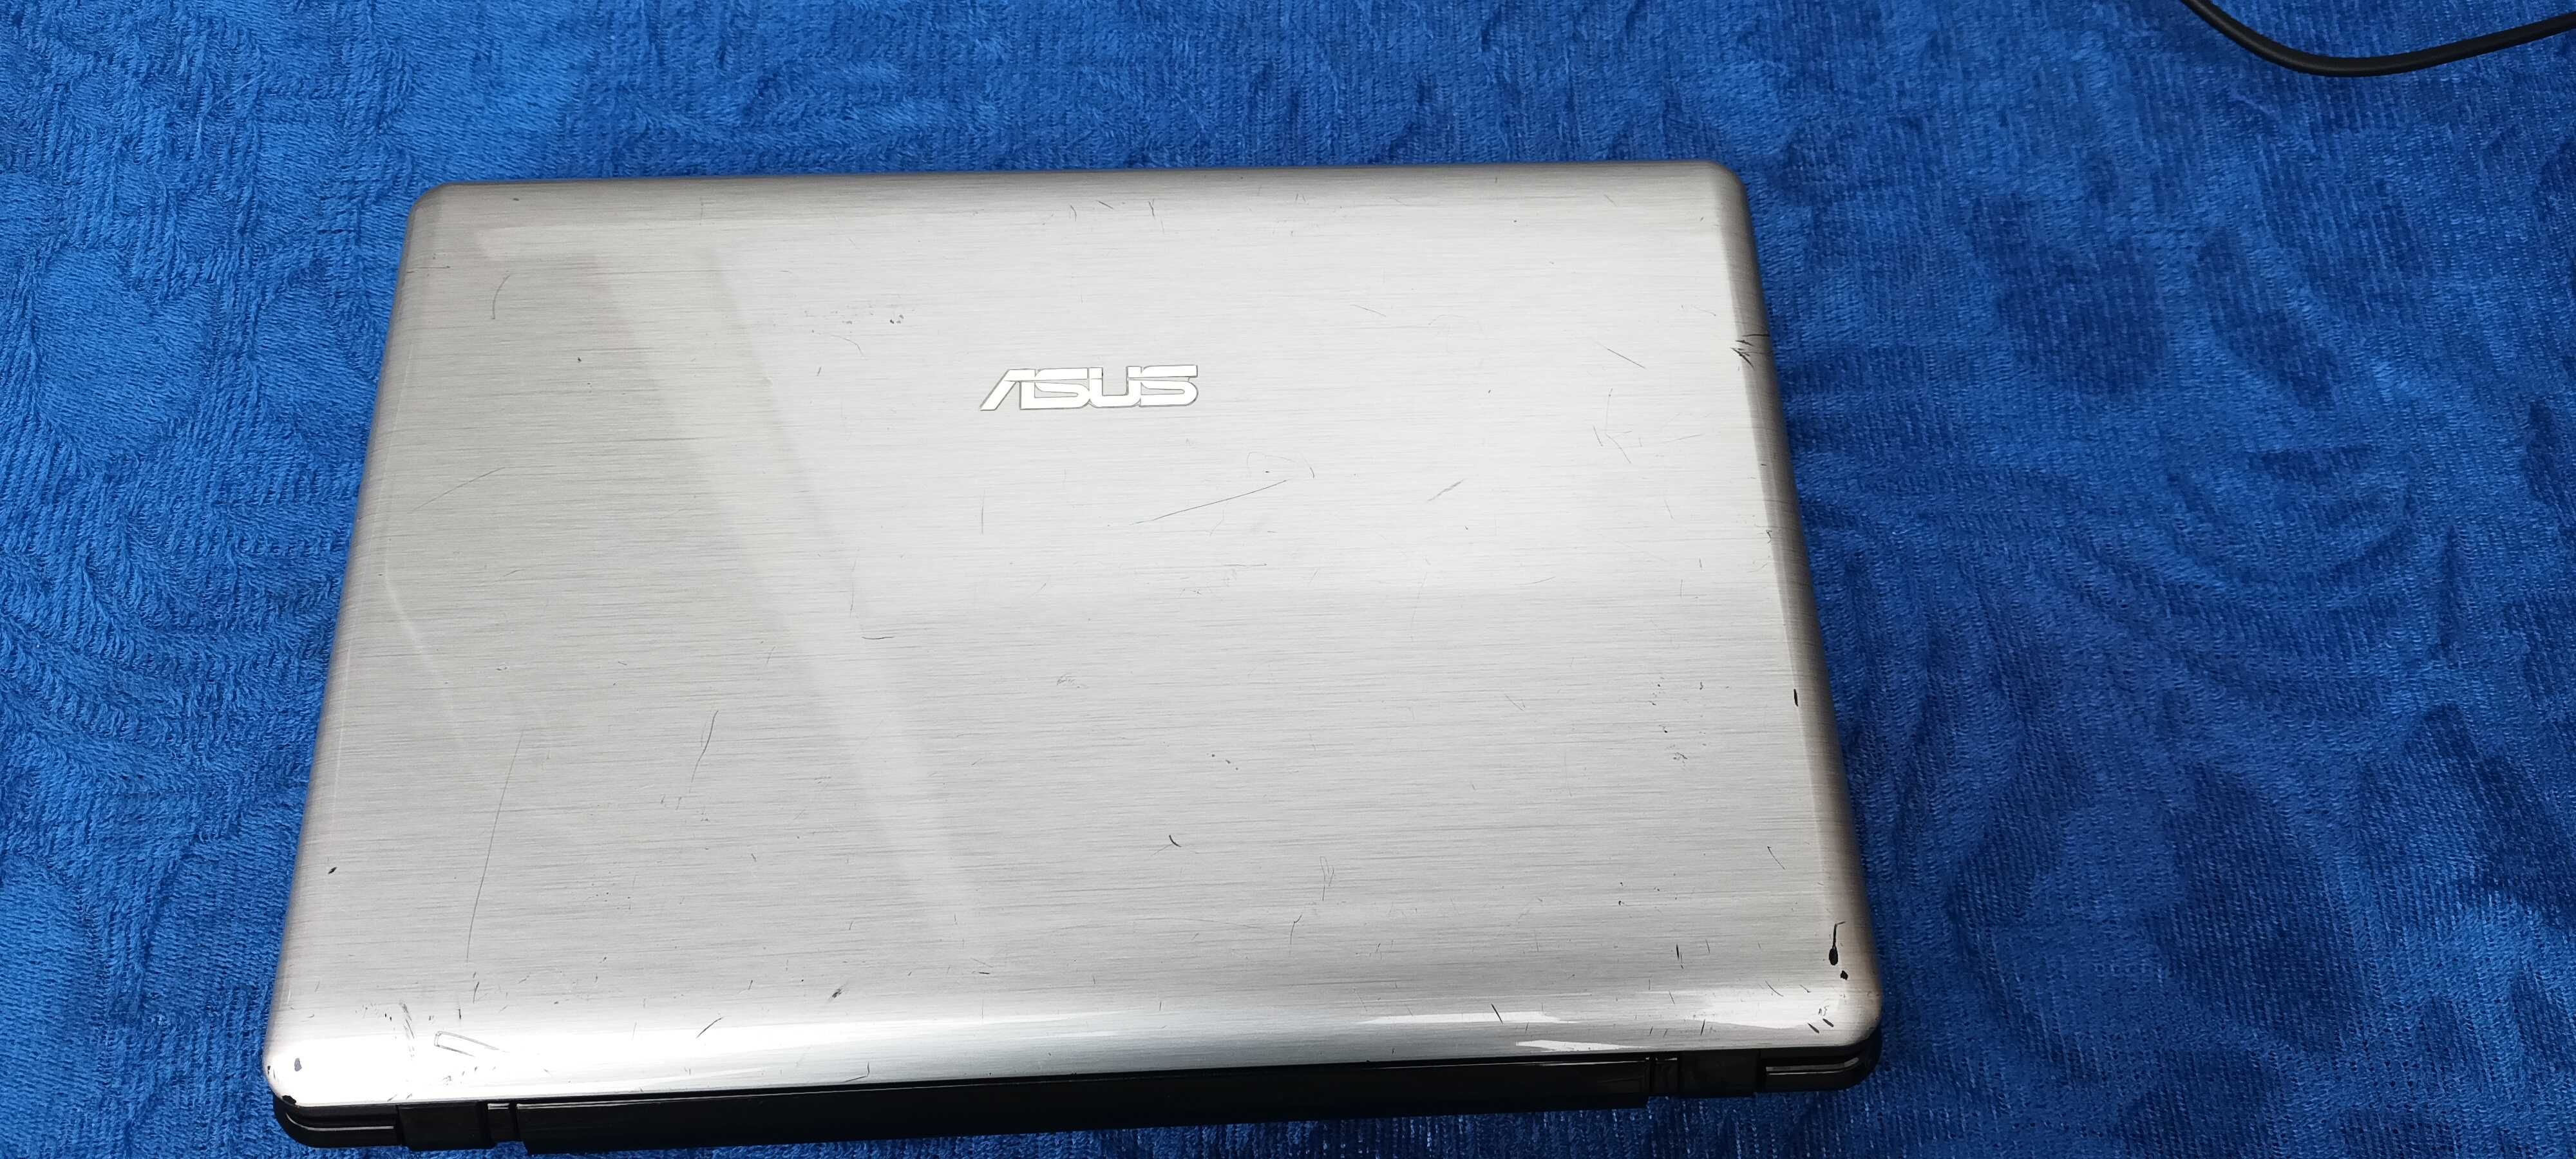 ASUS Eee PC 1201K Netbook 30.7 cm (12.1") AMD Geode 1 GB, Windows XP